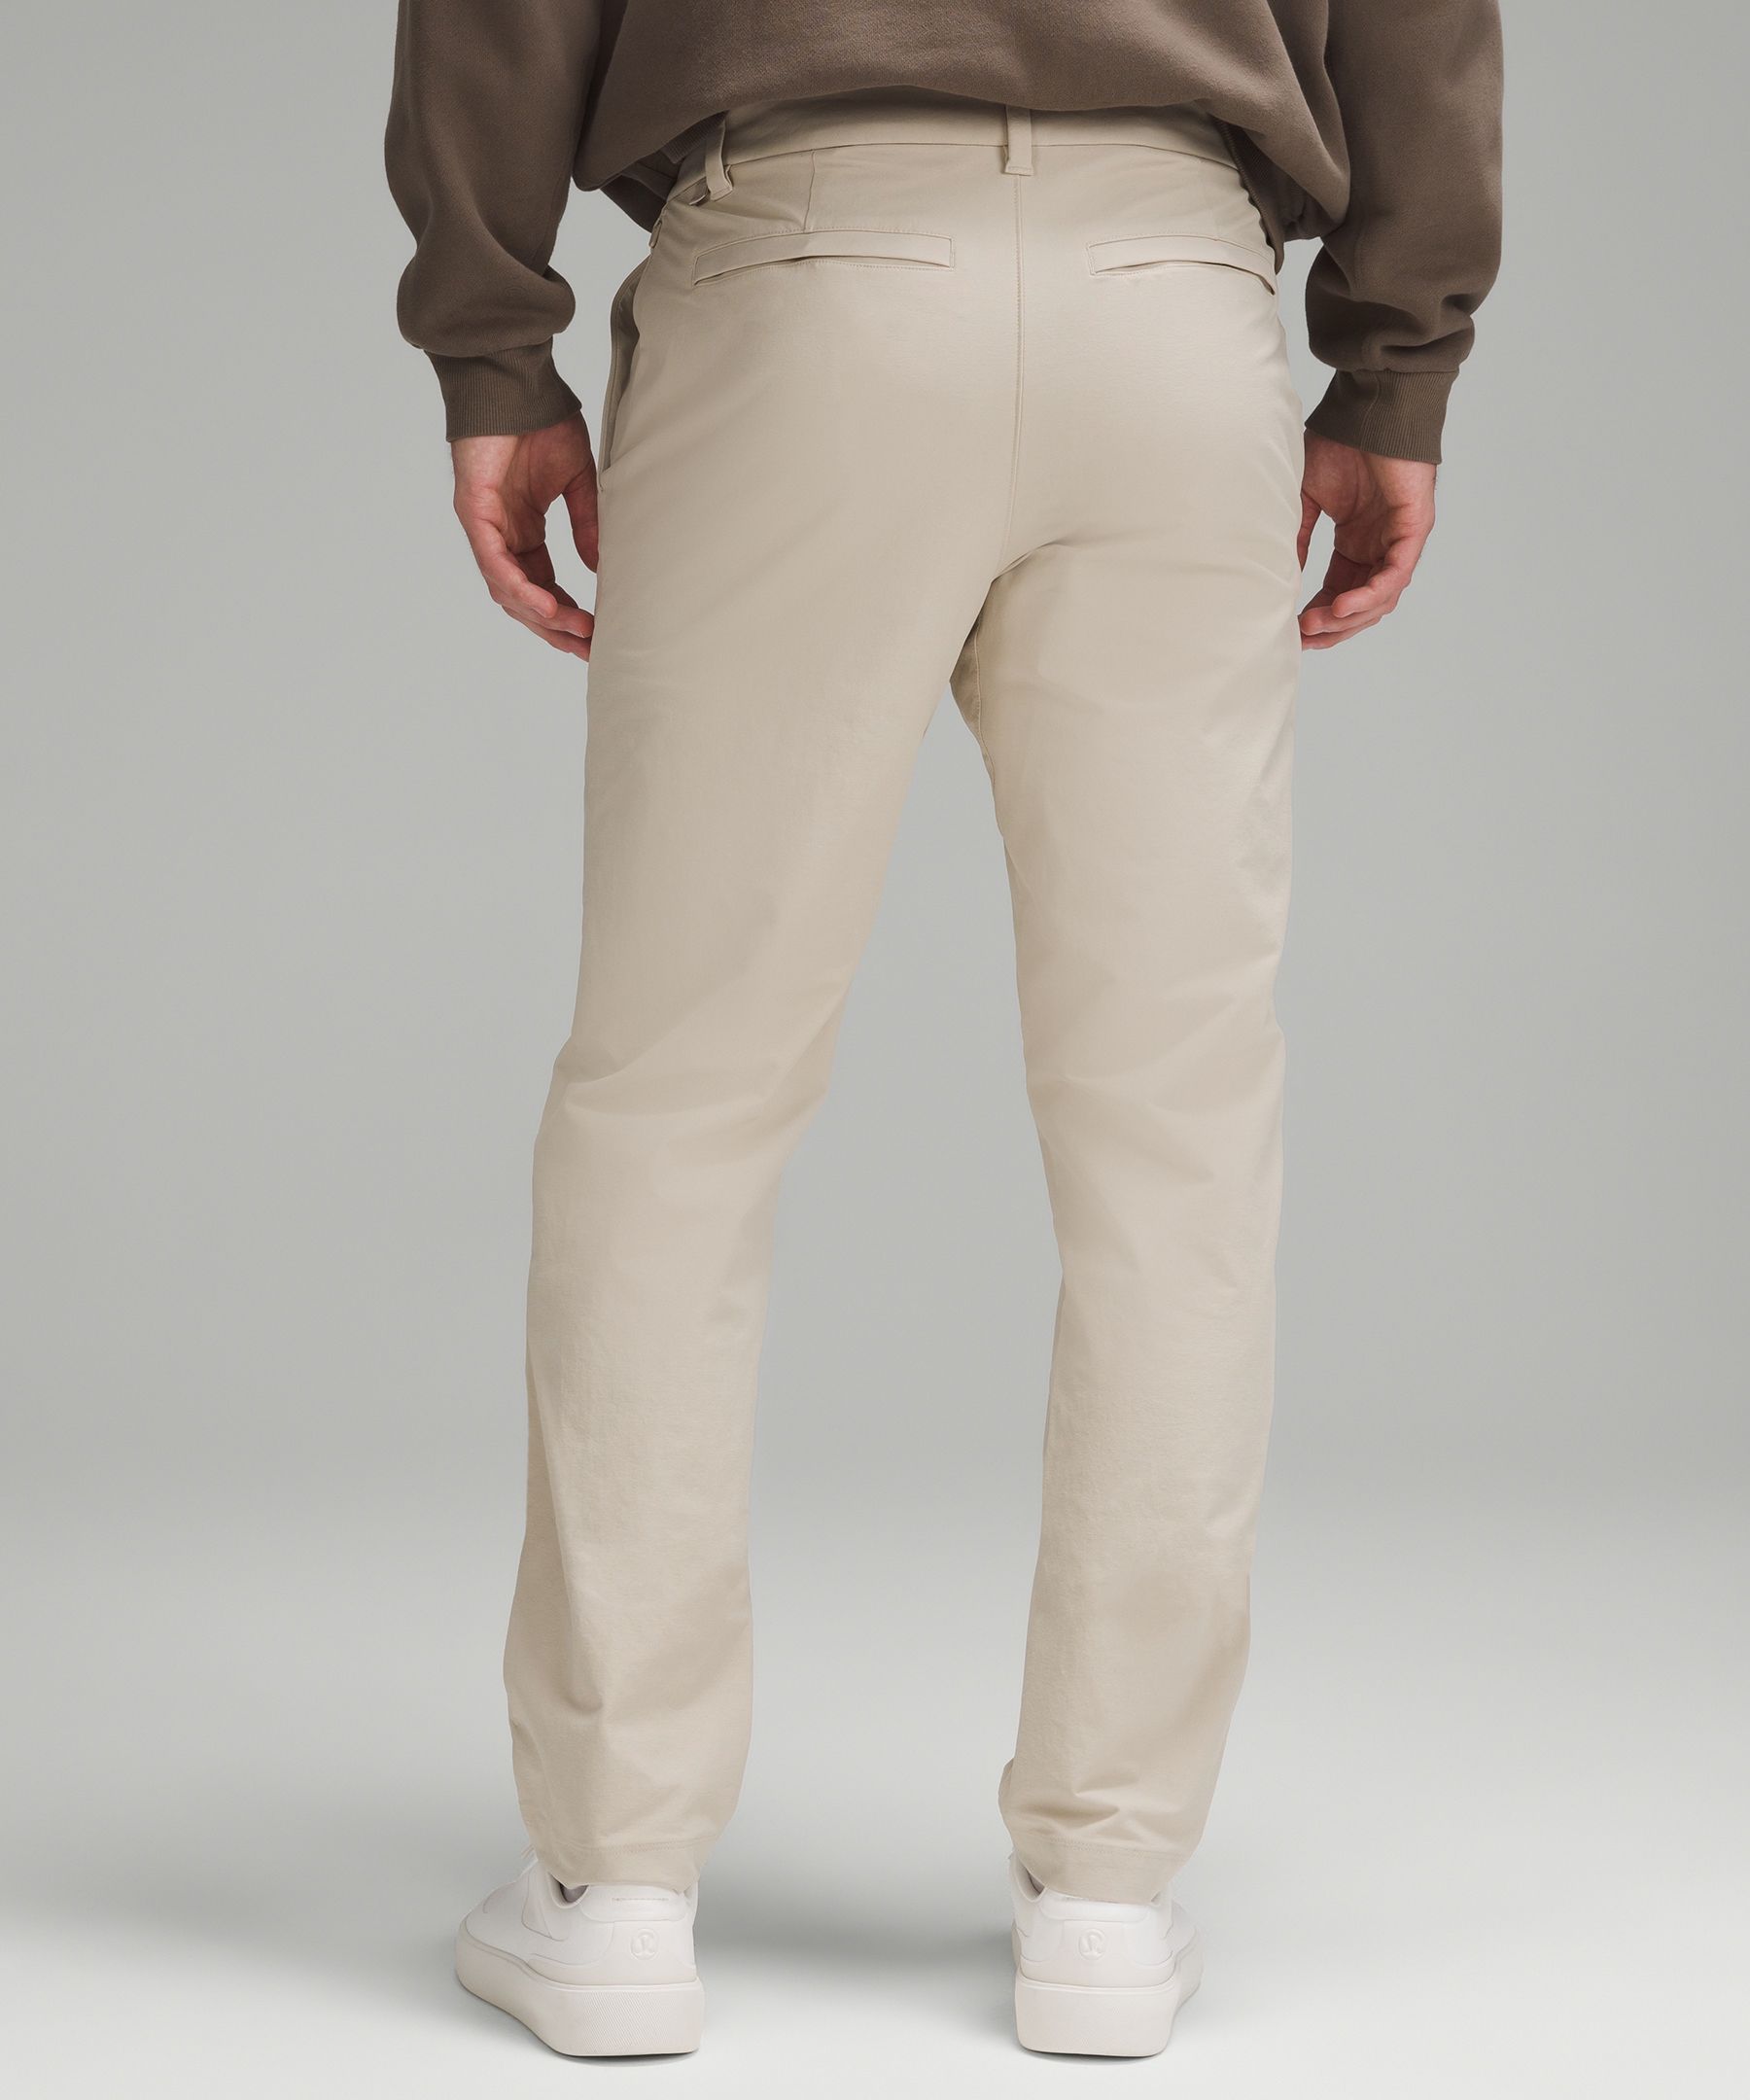 Shop Lululemon Abc Classic-fit Trousers 34"l Stretch Cotton Versatwill